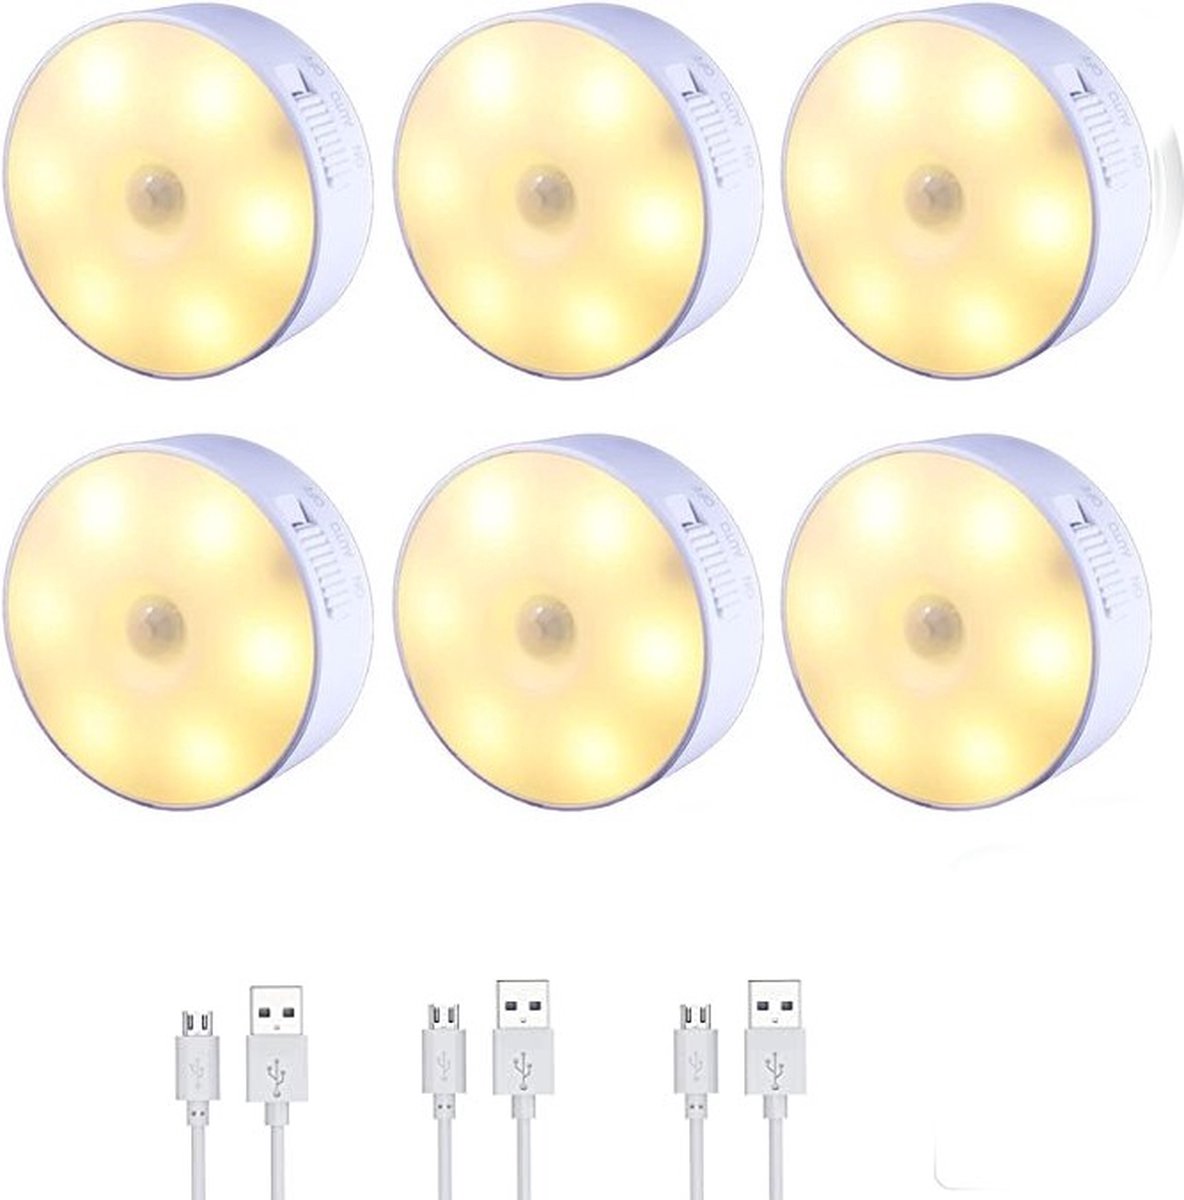 6 Stuks - Draadloze ledlamp – Met Bewegingssensor – Draadloze wandlamp – Draadloze ledspot – Usb oplaadbaar – Dimbaar – met Magneet